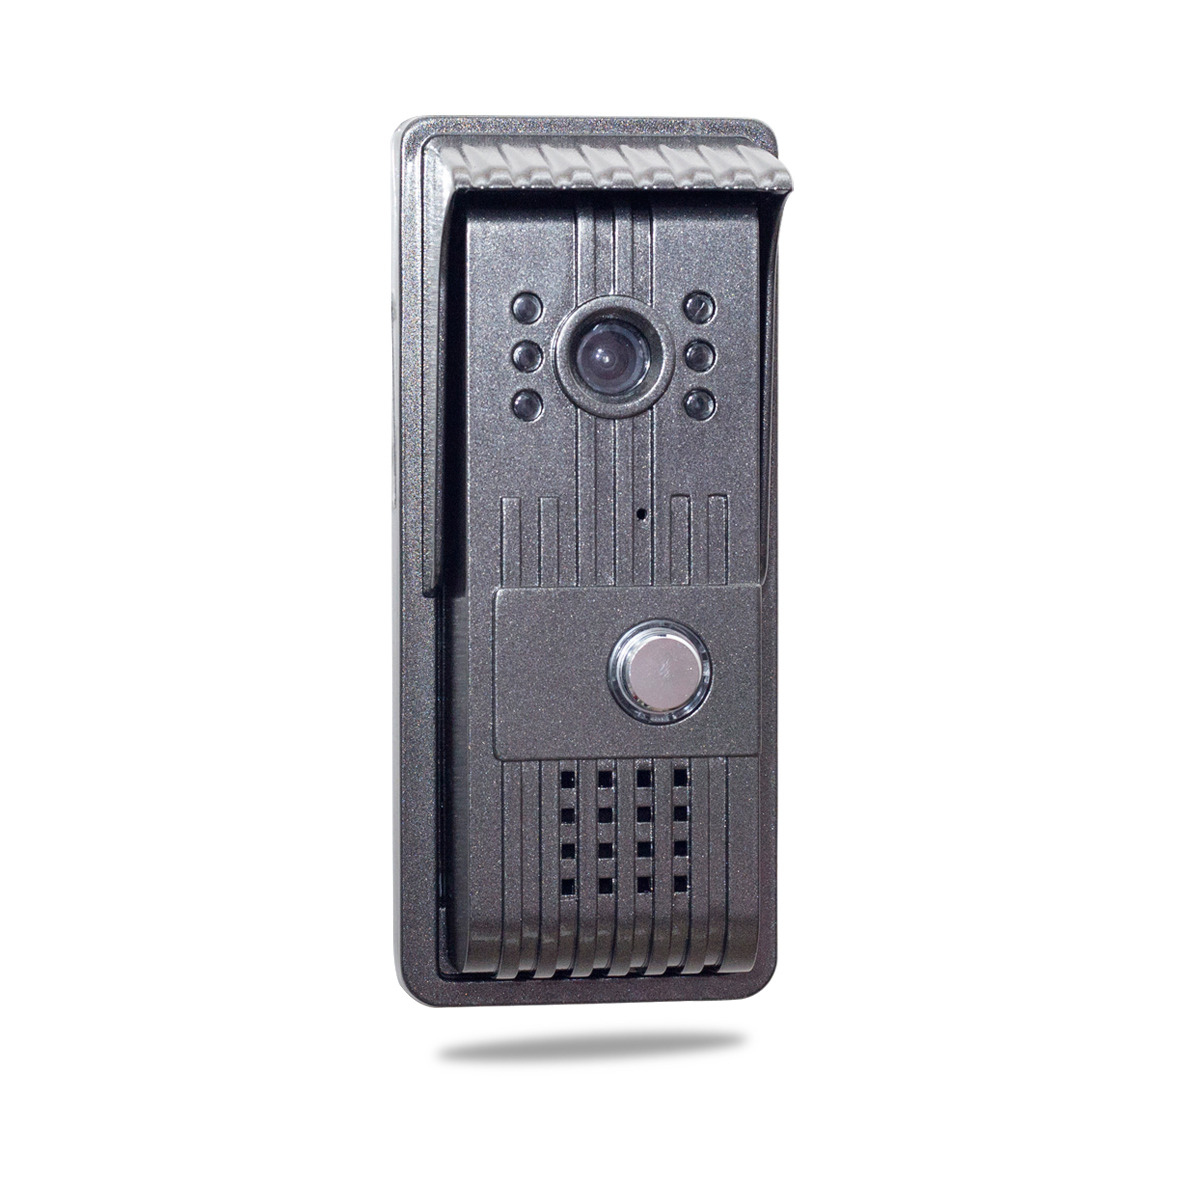 AlyBell HD camera intercom night vision wifi video doorbell 